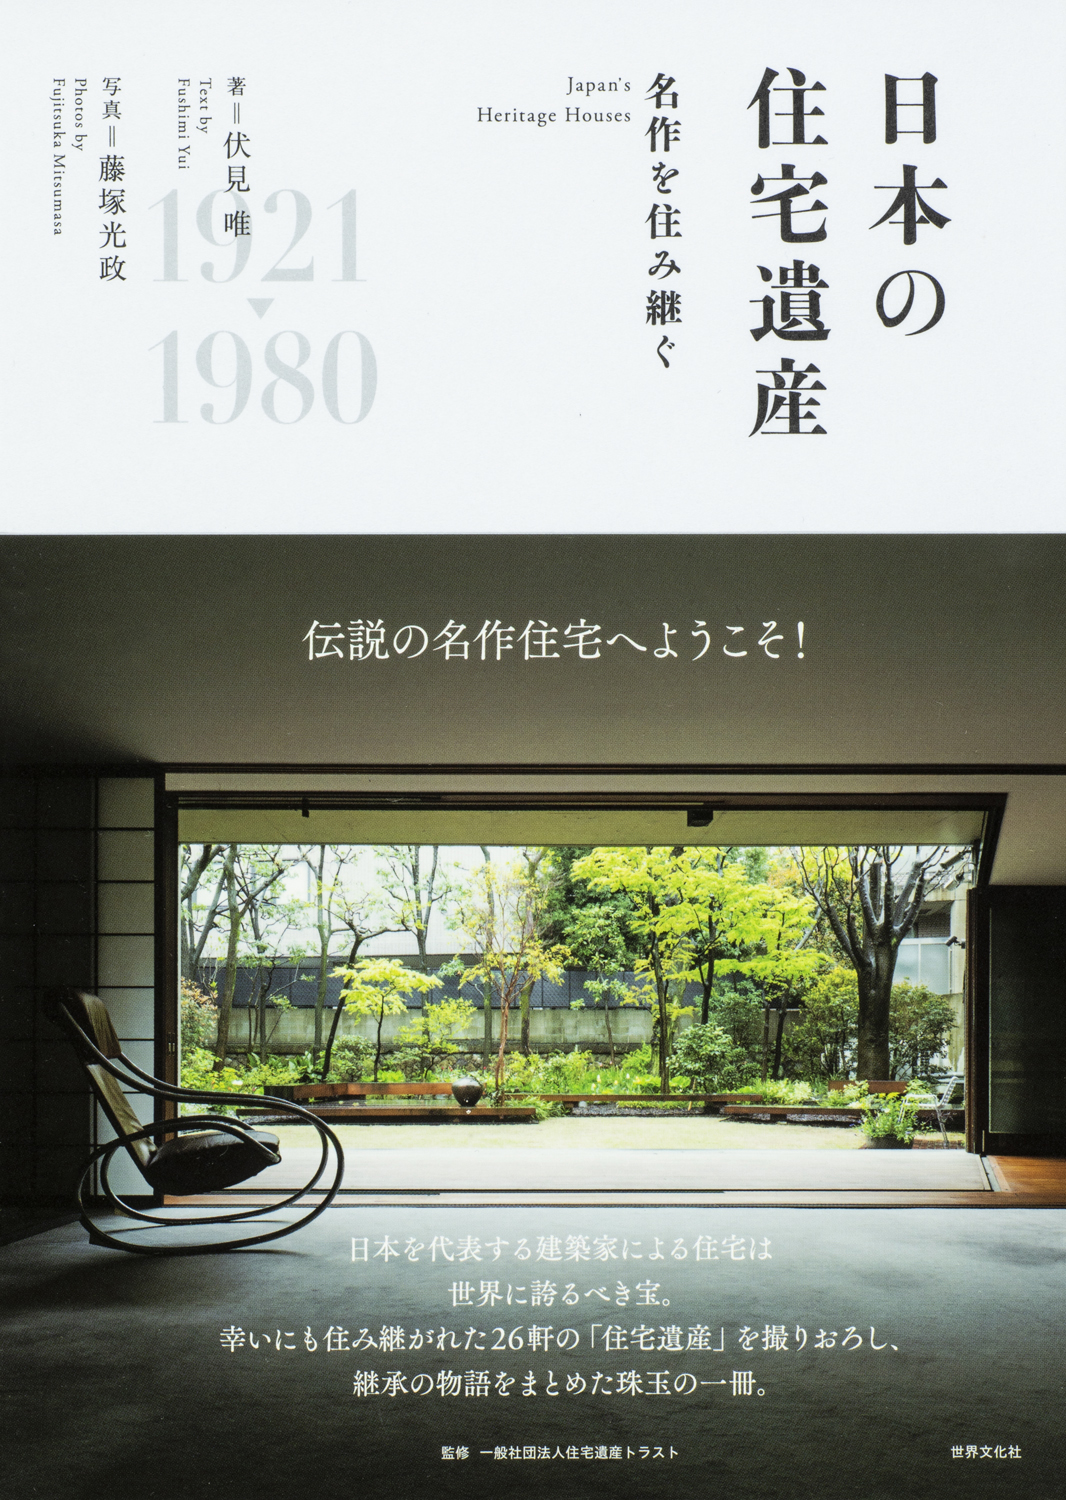 名作住宅を 住み継ぐ という選択 日本を代表する建築家たちが生んだ 住宅遺産 の今 株式会社世界文化ホールディングスのプレスリリース